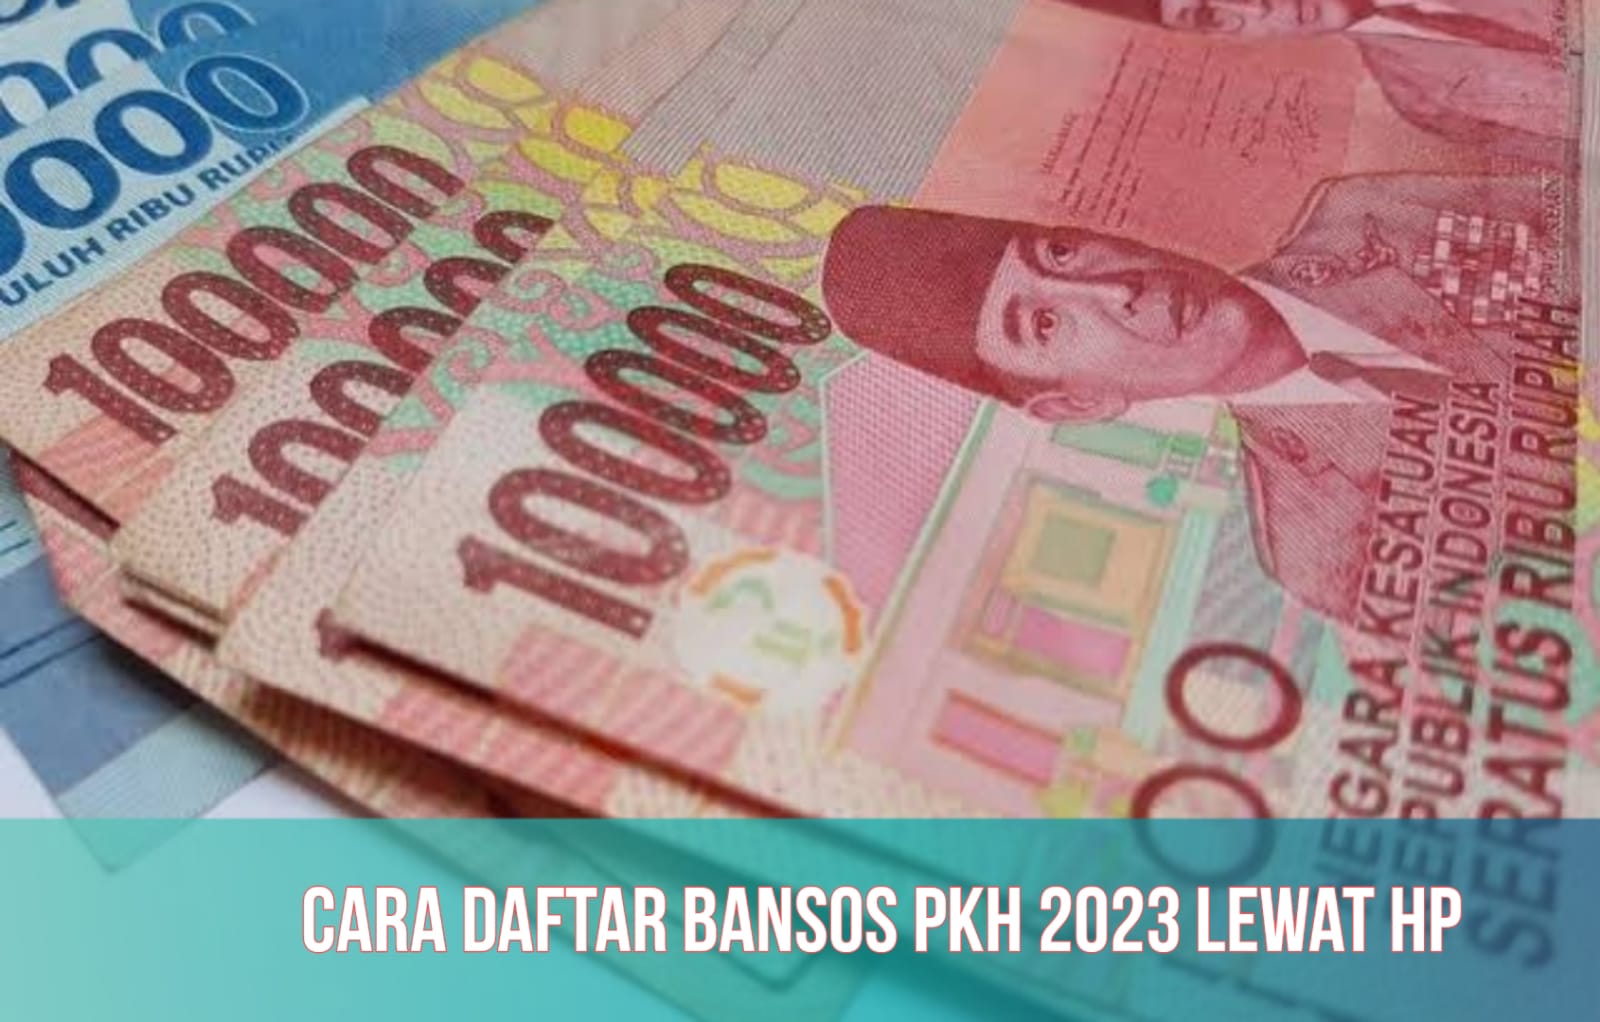 Cara Daftar Bansos PKH 2023, Tahap 3 Cair Agustus hingga Rp750.000, Cek Segera!